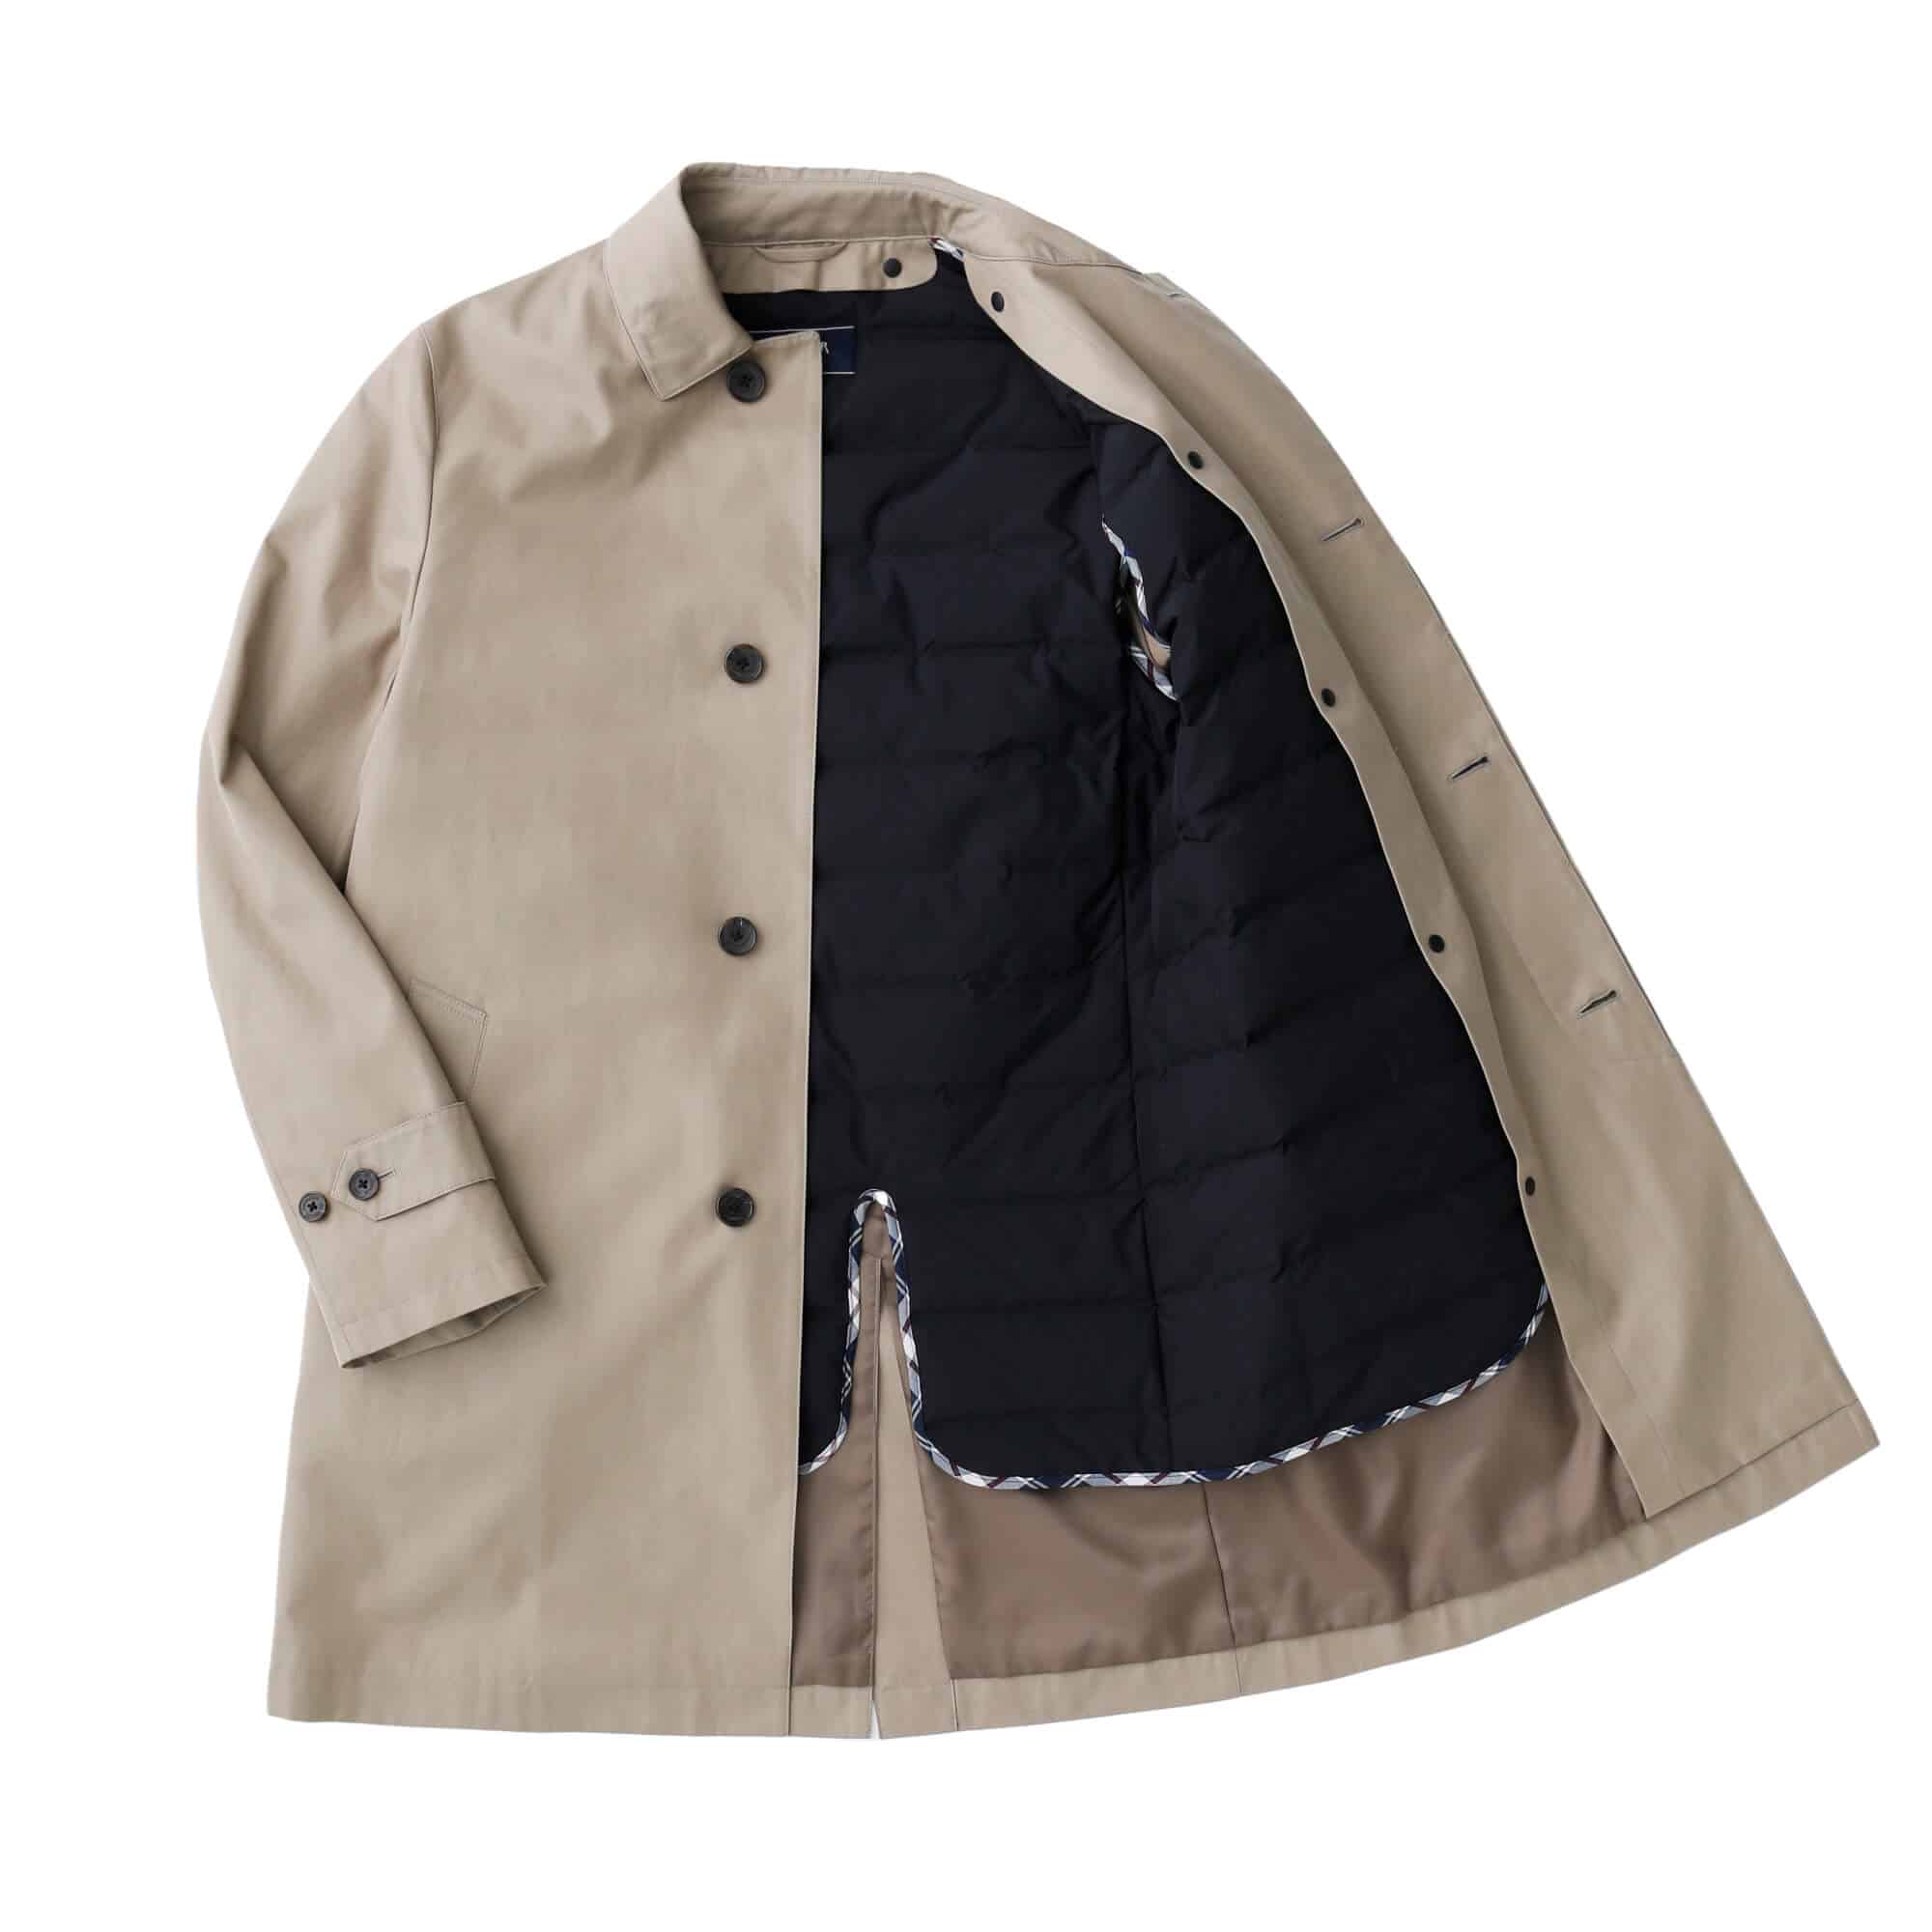 Authentic ステンカラーコート|ファッション通販のNY.online